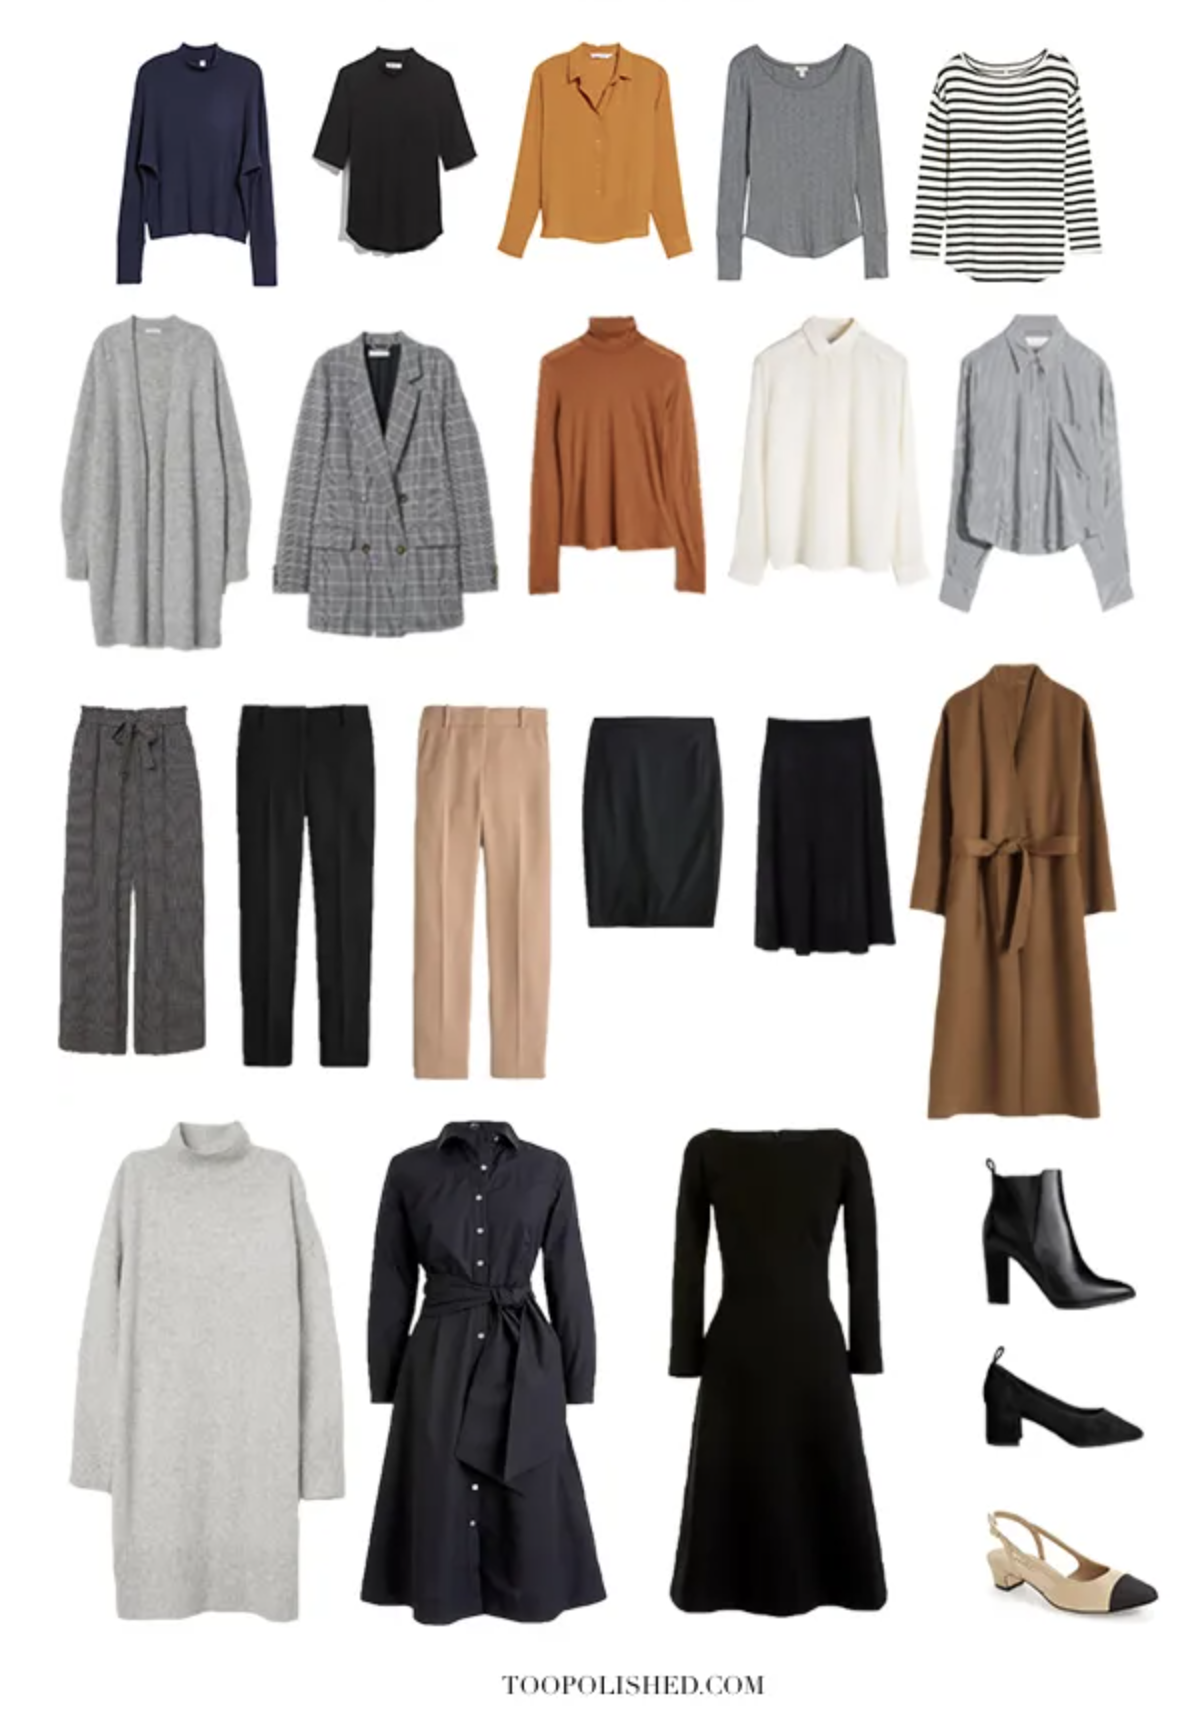 7 Wardrobe Essentials For Effortless Style - Wardrobe Staples